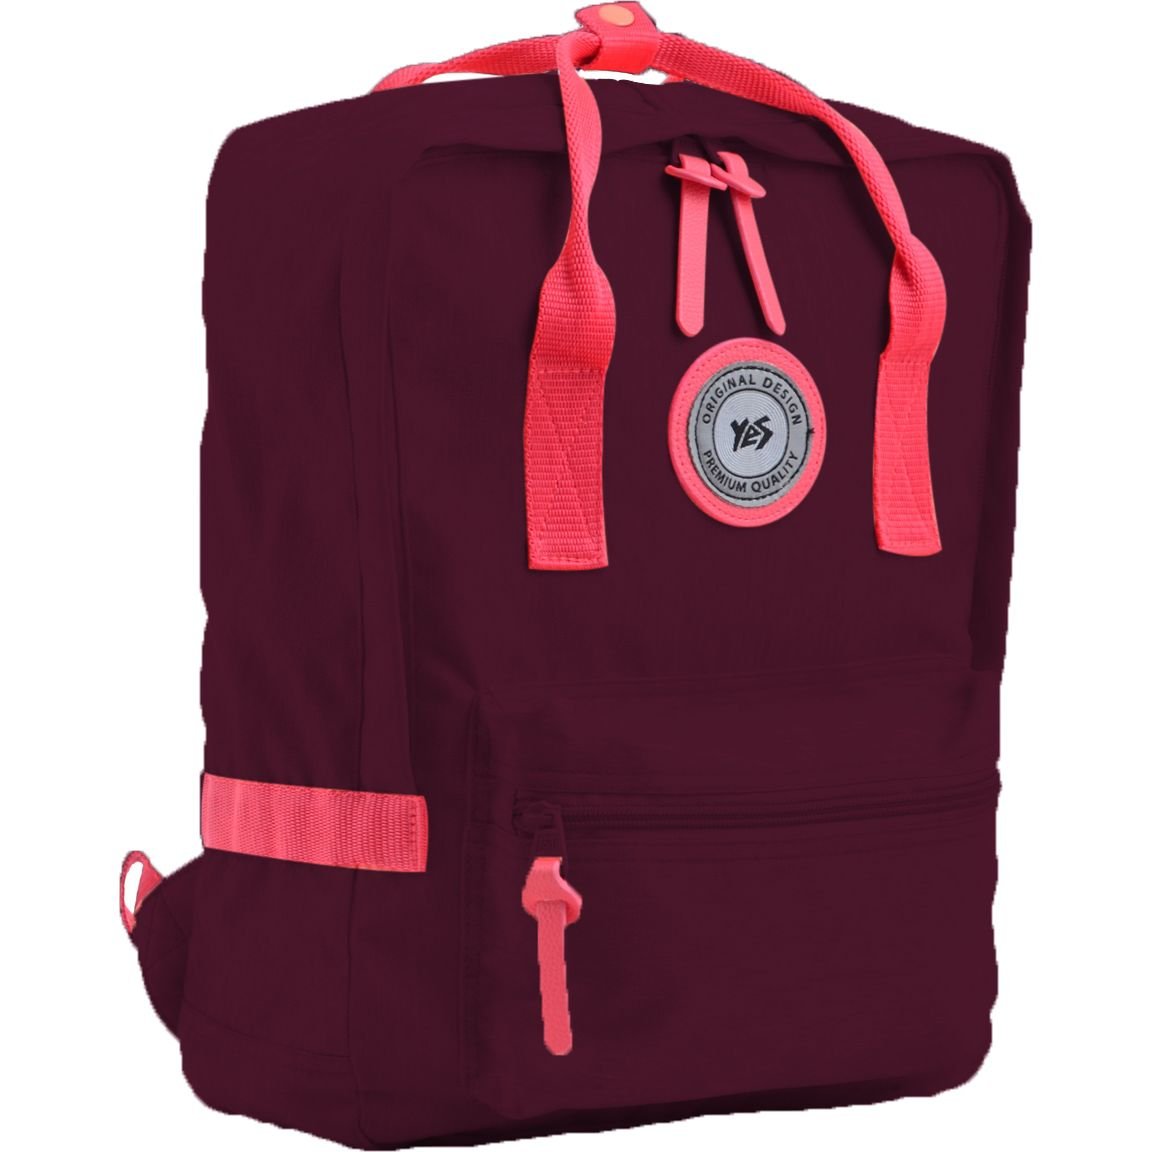 Рюкзак для підлітків Yes ST-24 Tawny Port, бордовий (555585) - фото 1